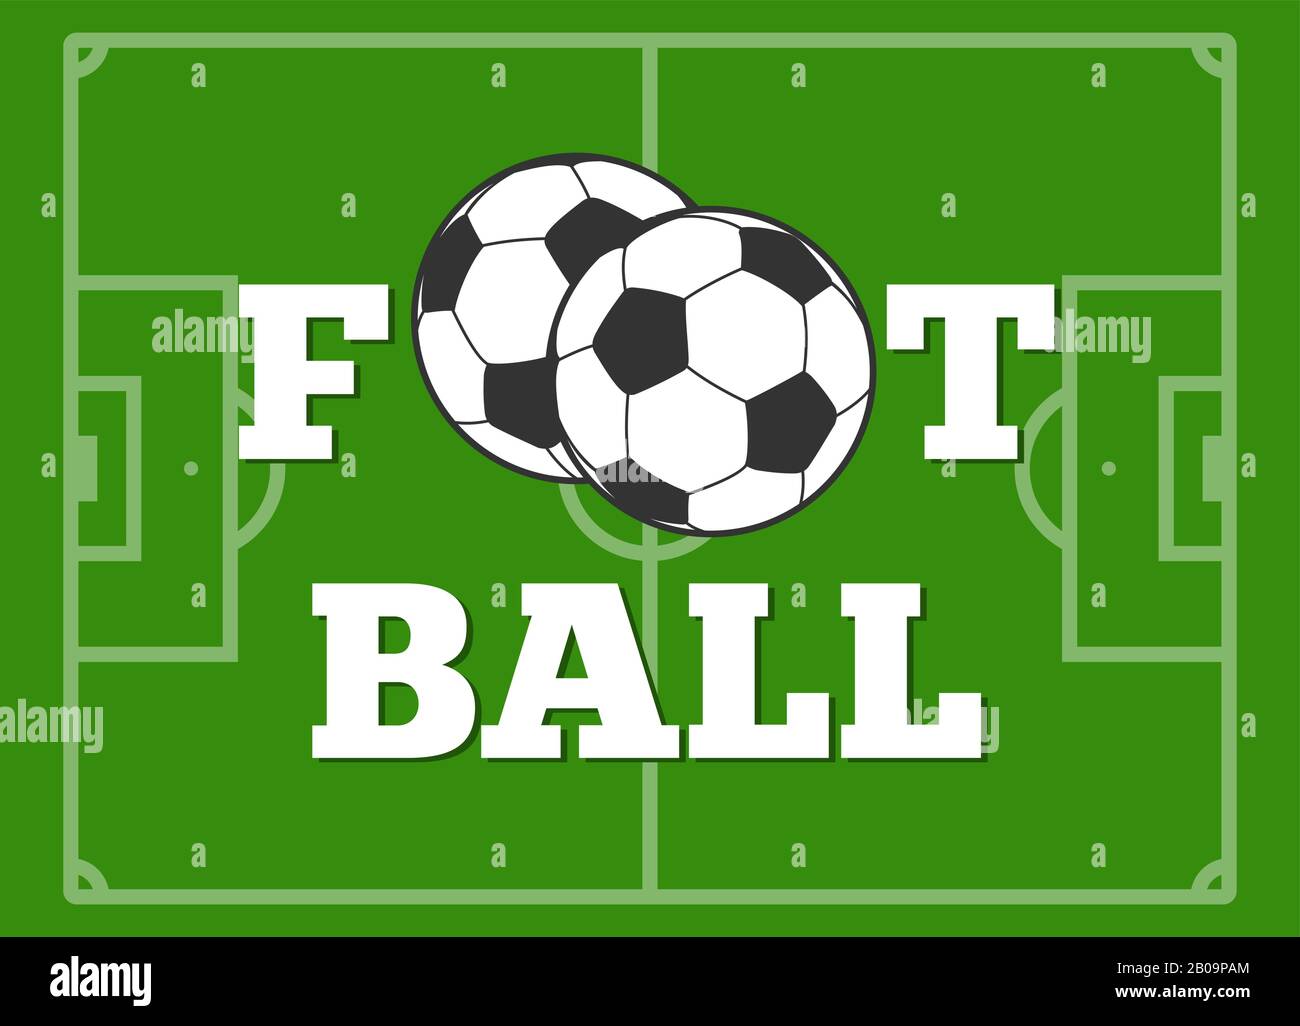 Fußball-Buchstaben und Baller-Grün-Feldvektorillustration. Mannschaft des Fußball-Spiels Stock Vektor